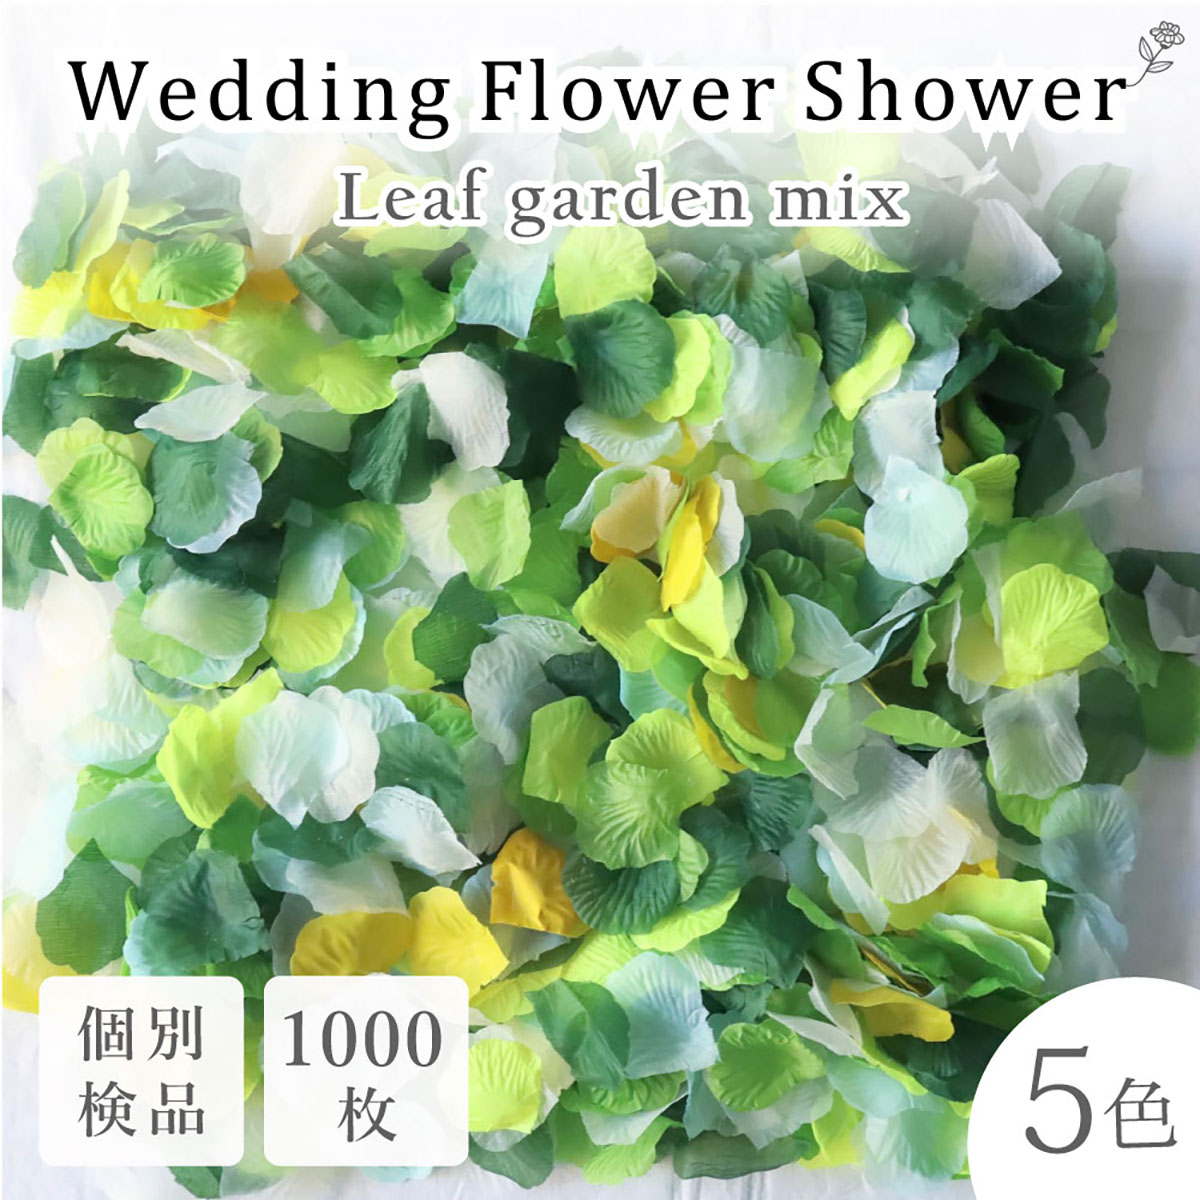 完全送料無料 4色セット フラワーシャワー 1000枚 花びら 造花 ウエディング 誕生日